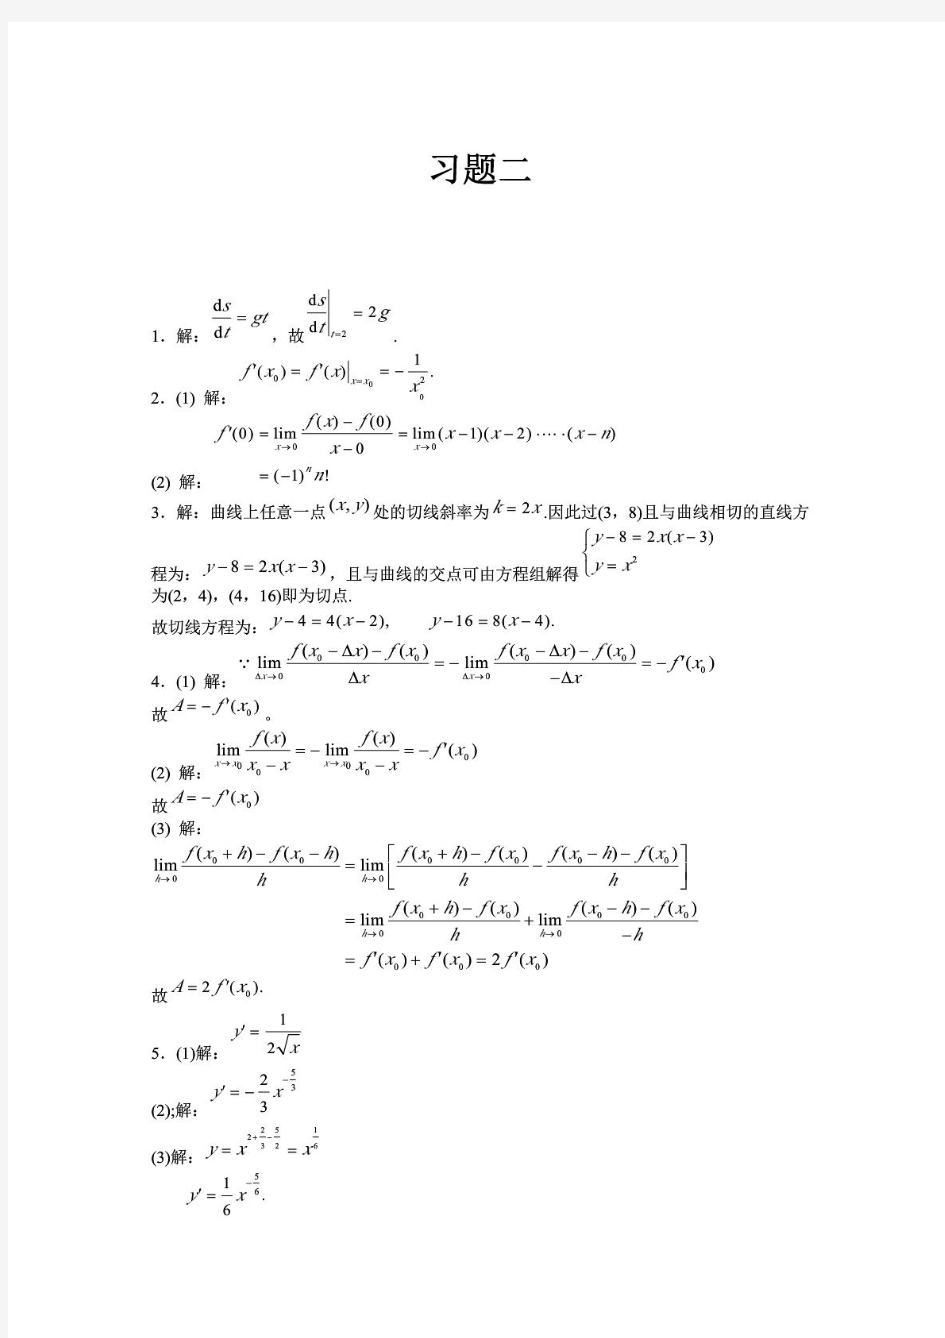 高等数学 上册 (黄立宏 廖基定 著) 复旦大学出版社 第二章 课后答案,doc_type,pdf